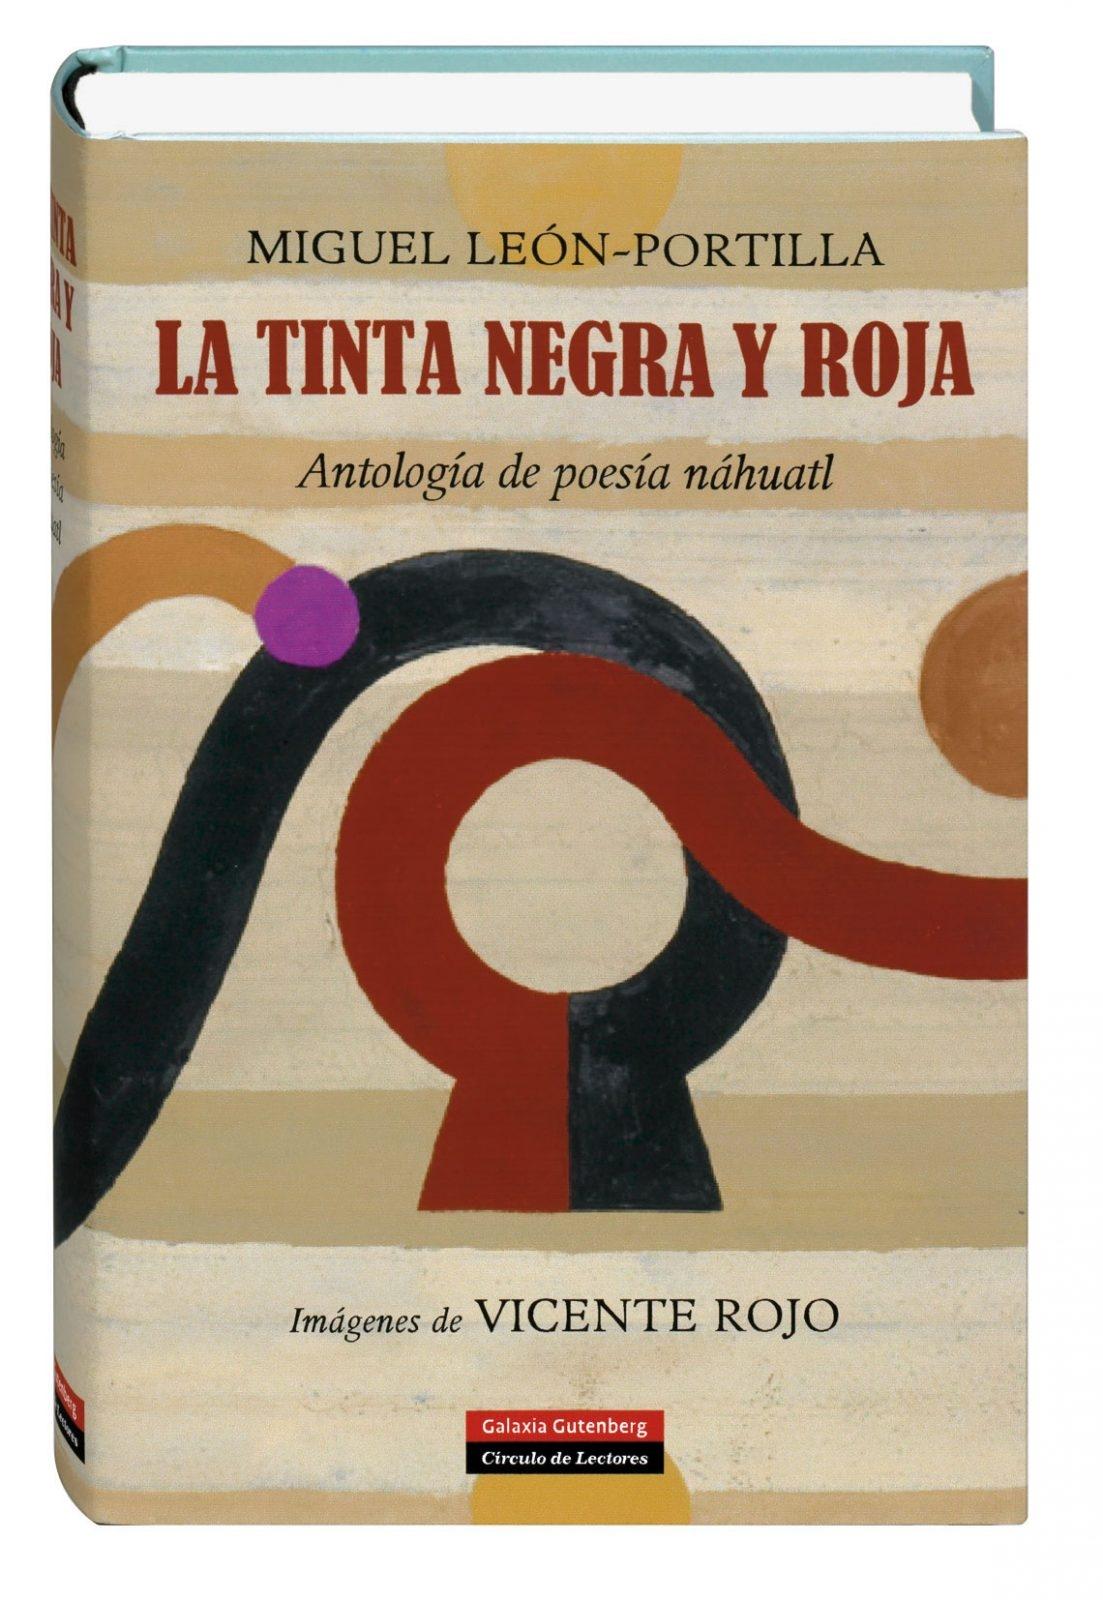 La tinta negra y roja "Antología de poesía náhuatl". 